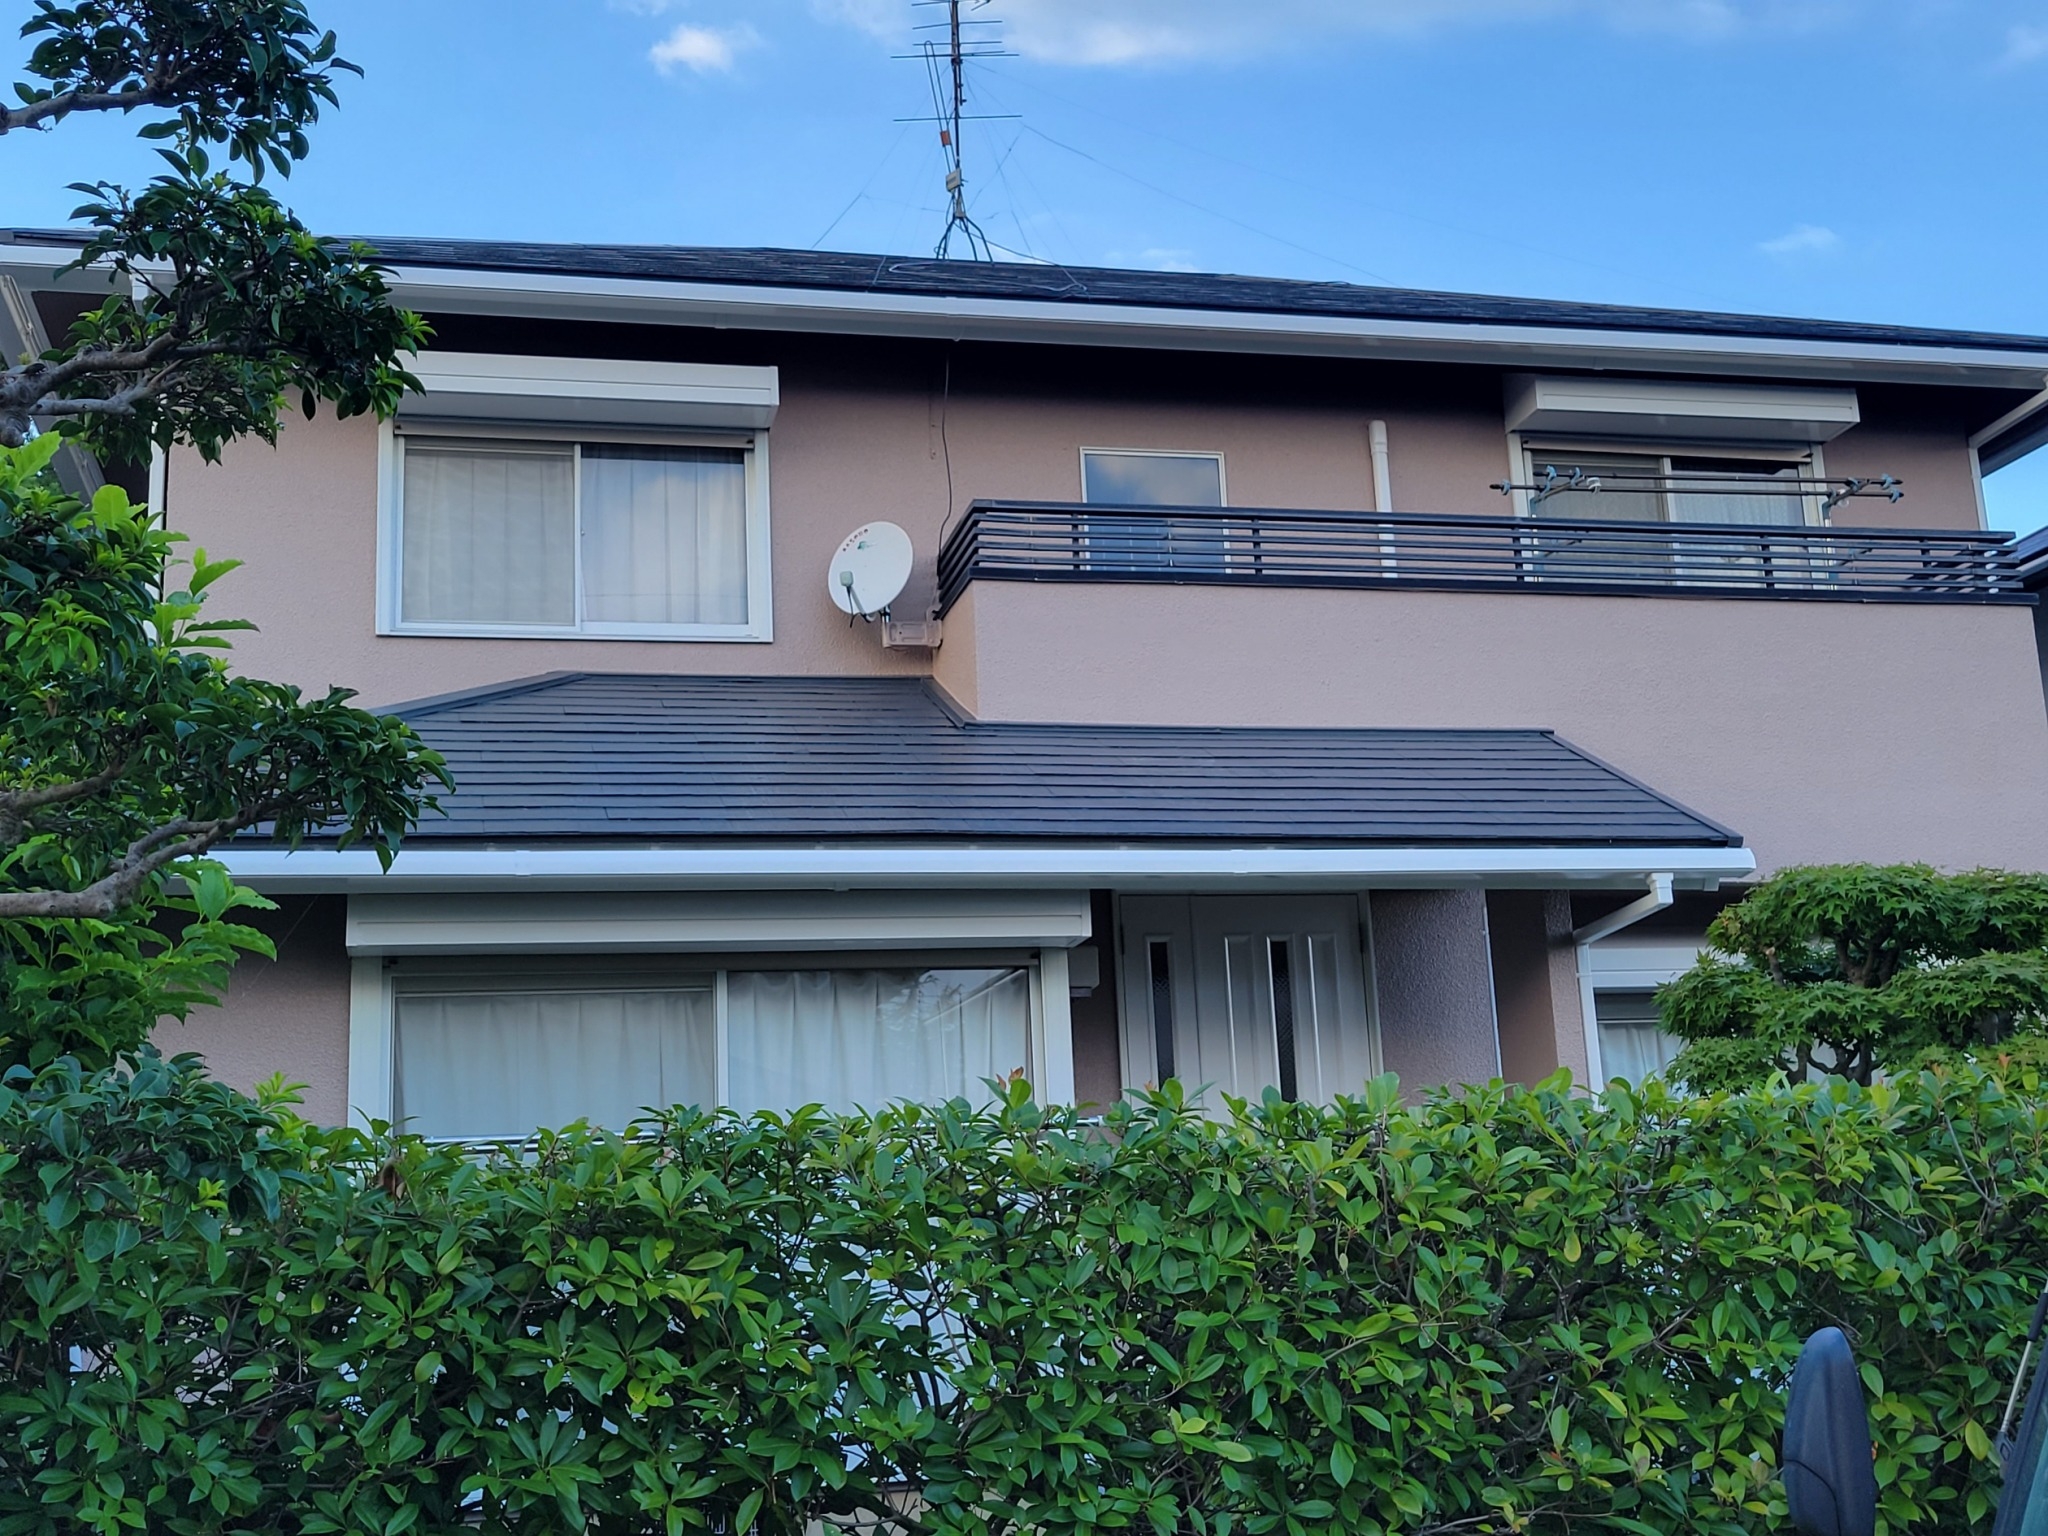 福岡県糟屋郡新宮町のK様邸で全体的に色あせてしまった屋根と外壁を弊社イチオシの塗料にて塗り替えました。8/4完成です。【ホームページより】